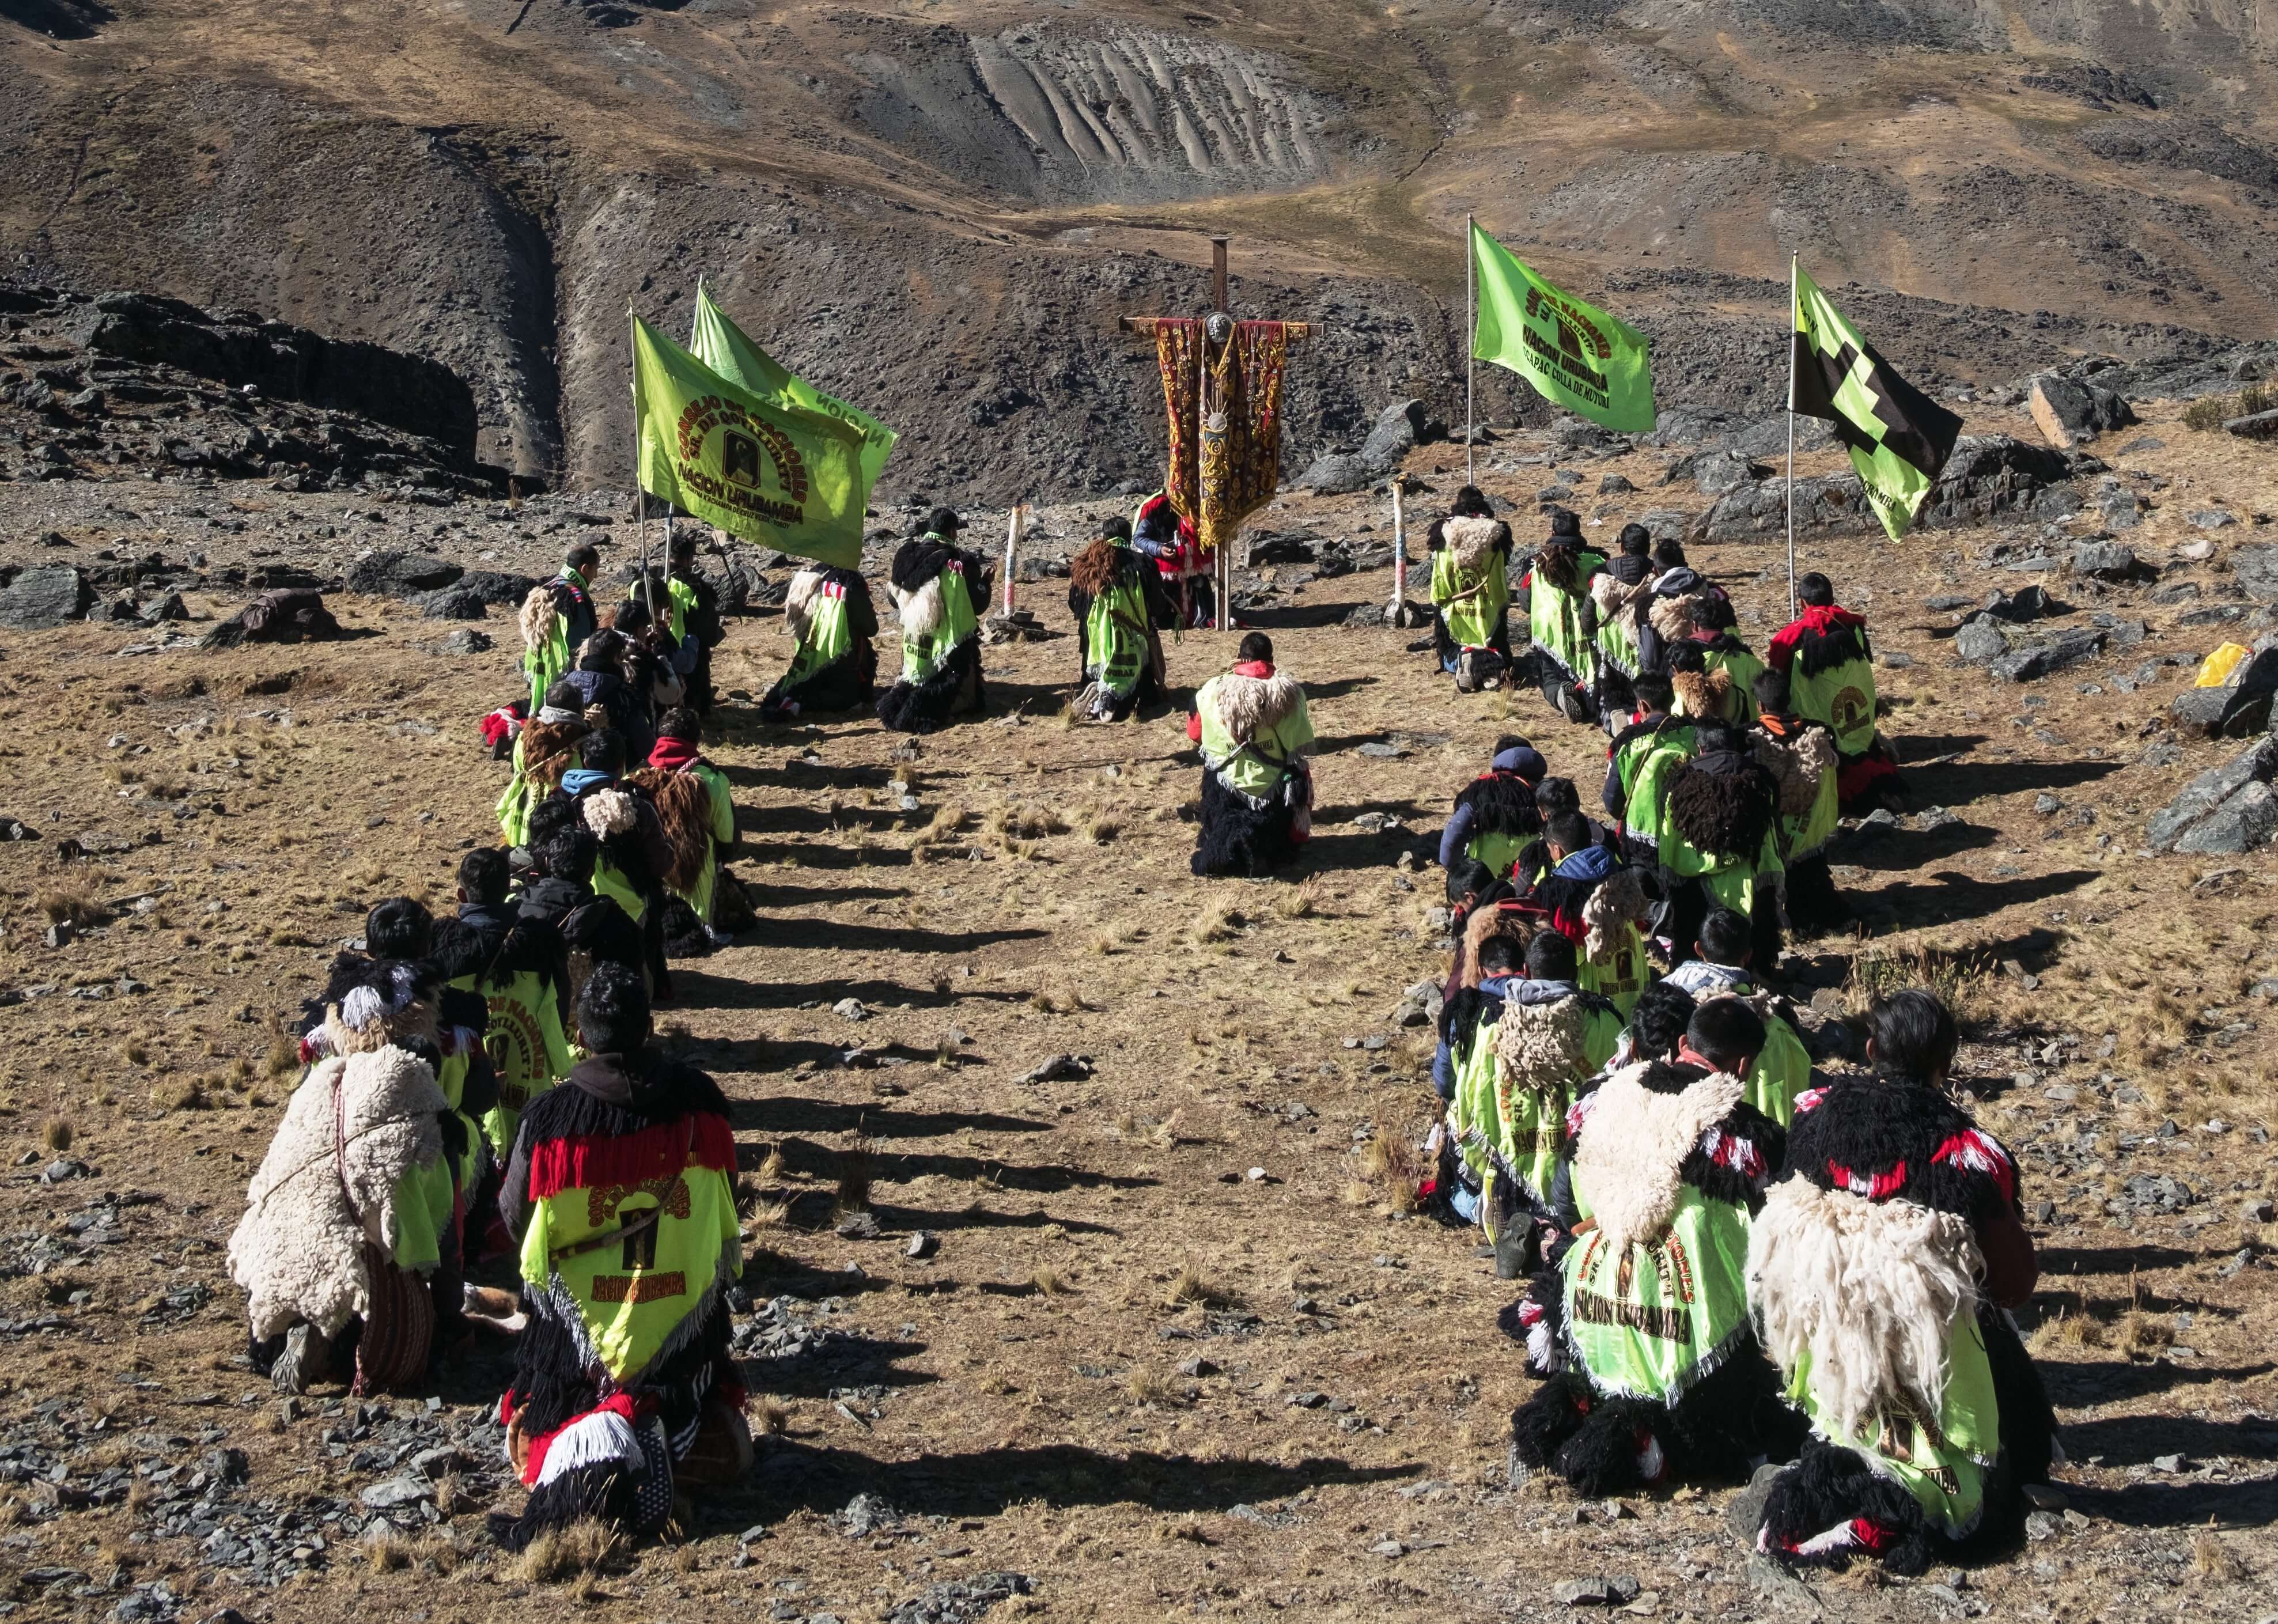 Les Ukukus de la nation urubamba sont réunis en prière pour saluer l’astre du jour au sommet du mont Qolqepunku, dans un paysage devenu pratiquement désertique. Après le lever du soleil, ils procèdent à différentes cérémonies. Ceux qui en sont à leur pr